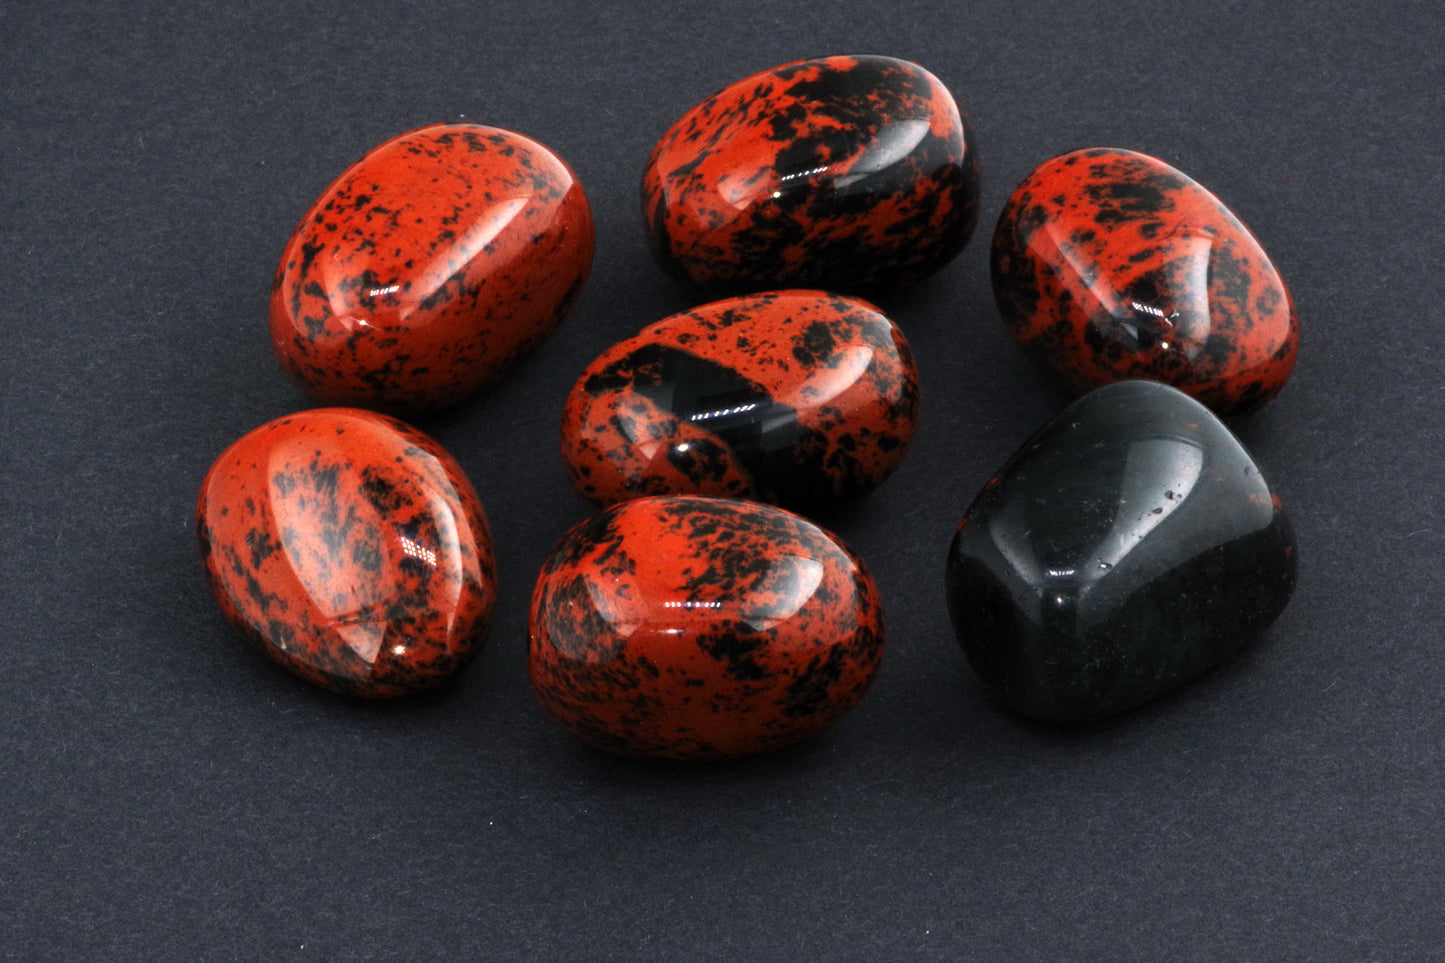 Mahogany obsidian